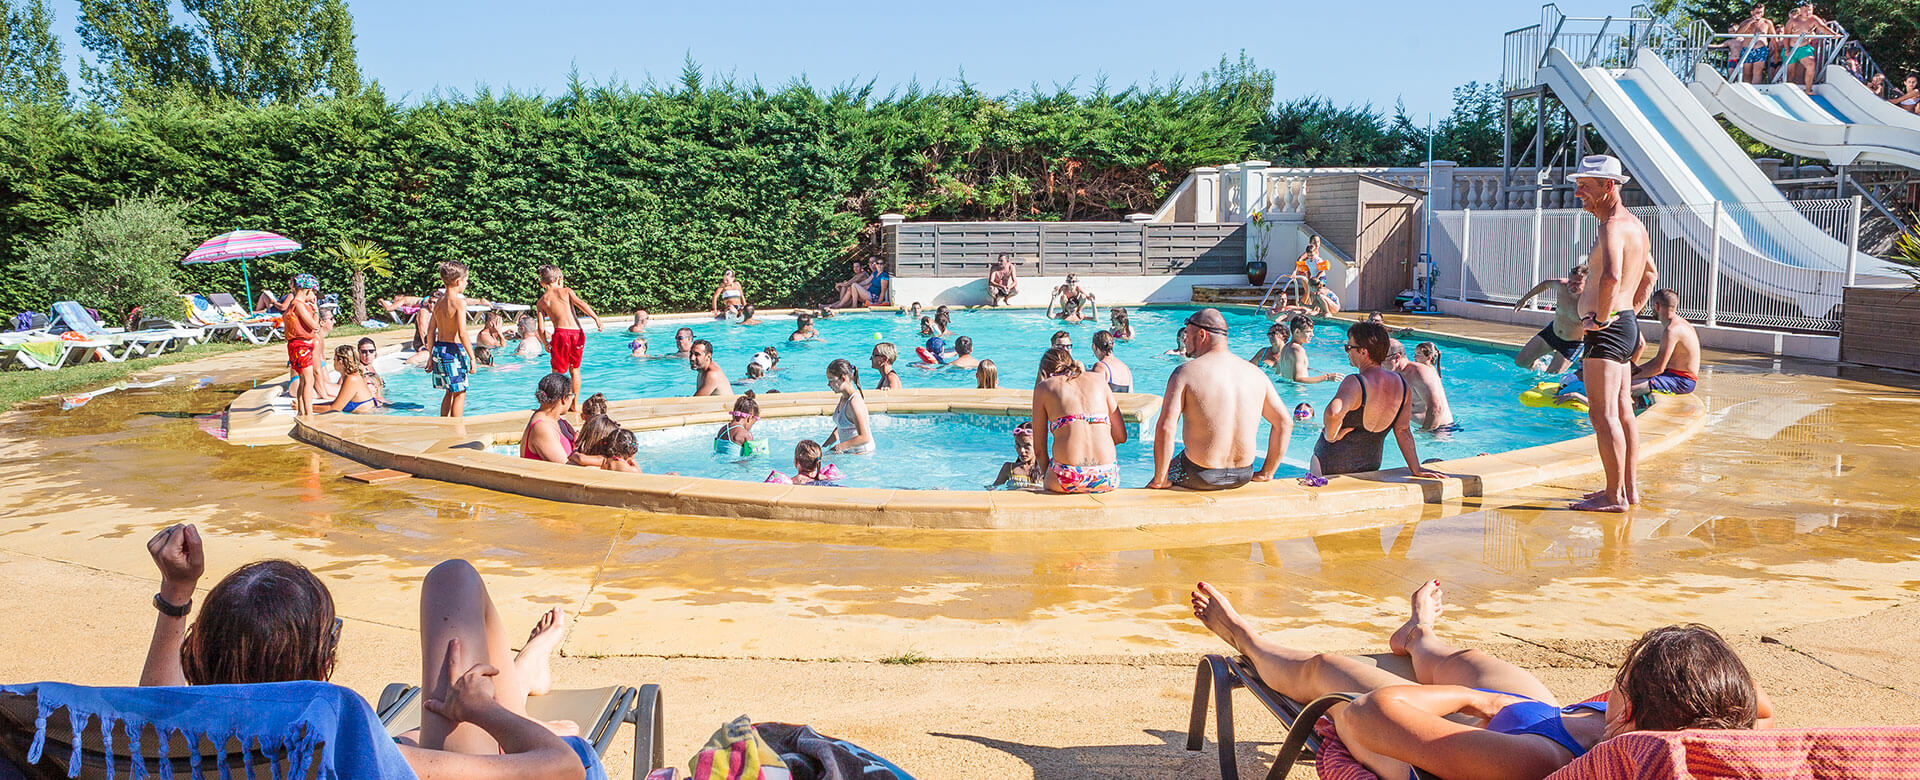 Espacio acuático con piscina, tobogán y piscina infantil del camping Le Chêne Vert en Tarn entre Albi y Gaillac